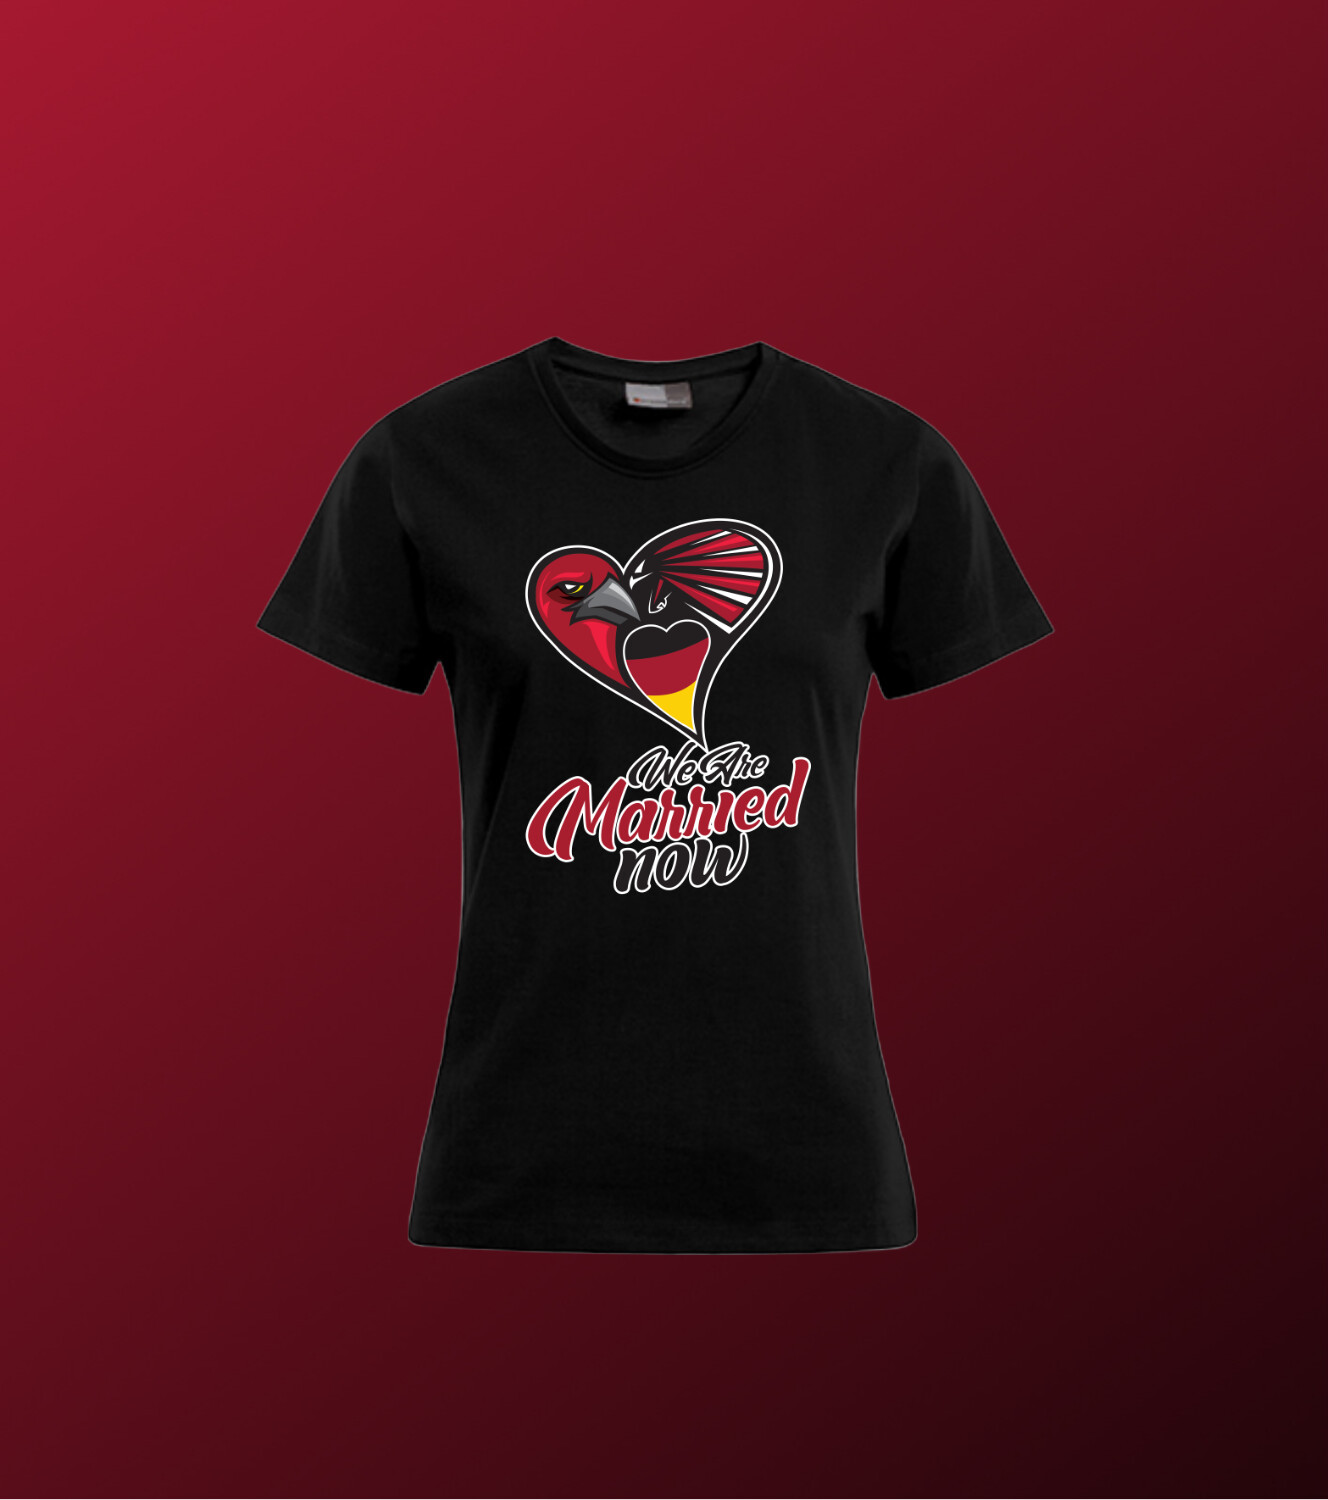 Atlanta Falcons Germany Damen T-Shirt 